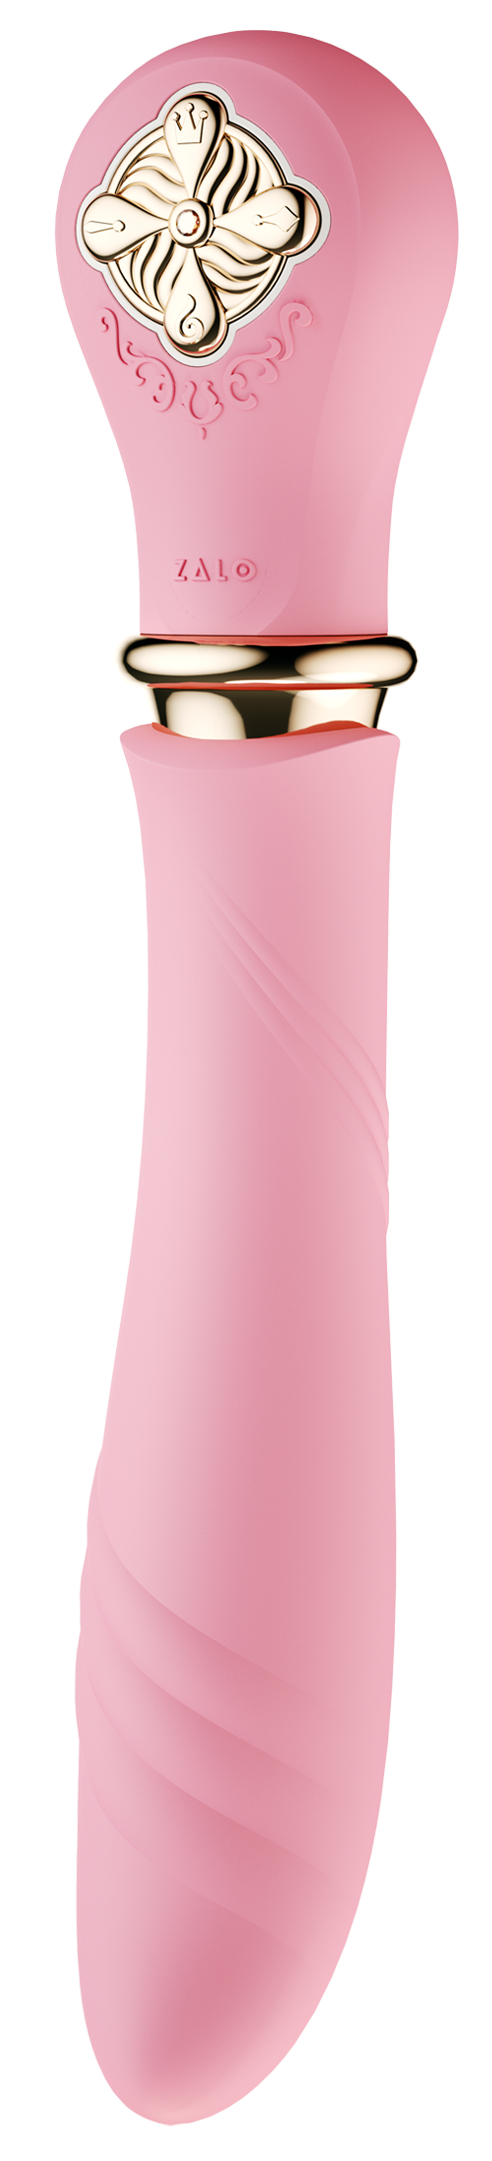 DESIRE  vibrējoša ierīce ar priekš-uzsildīšanas funkciju līdz 42°,rozā krāsa,skatīt aprakstu,diskrēta piegāde melnā iepakojumā